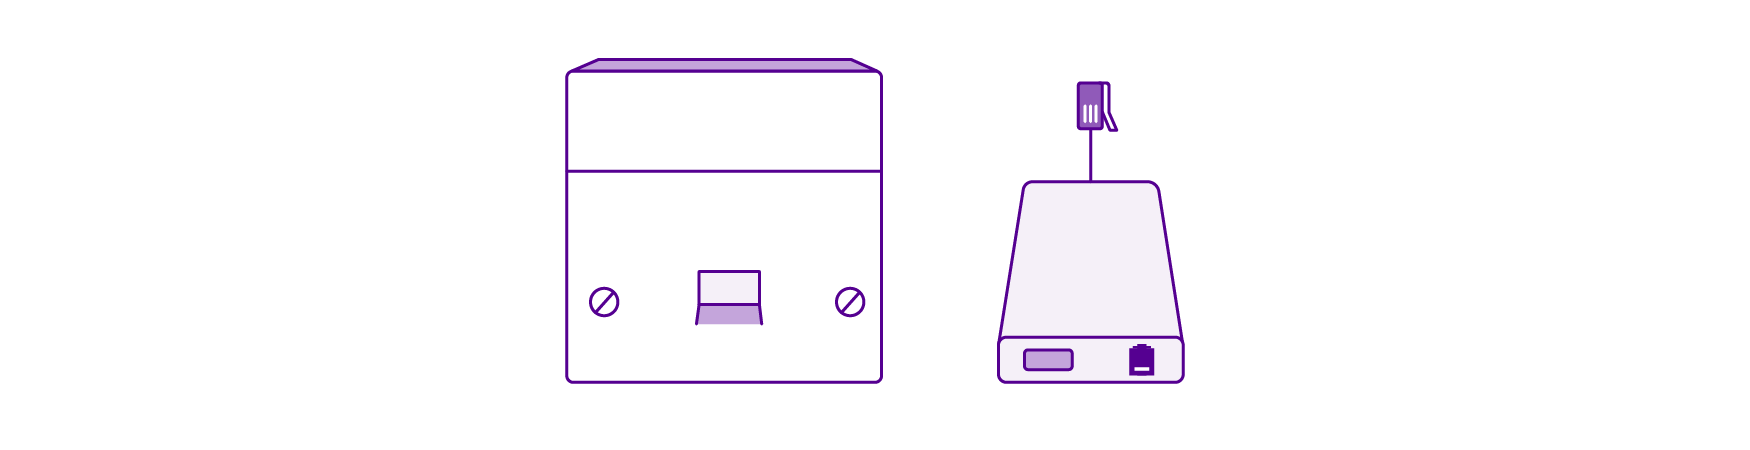 Microfilter in socket illustration